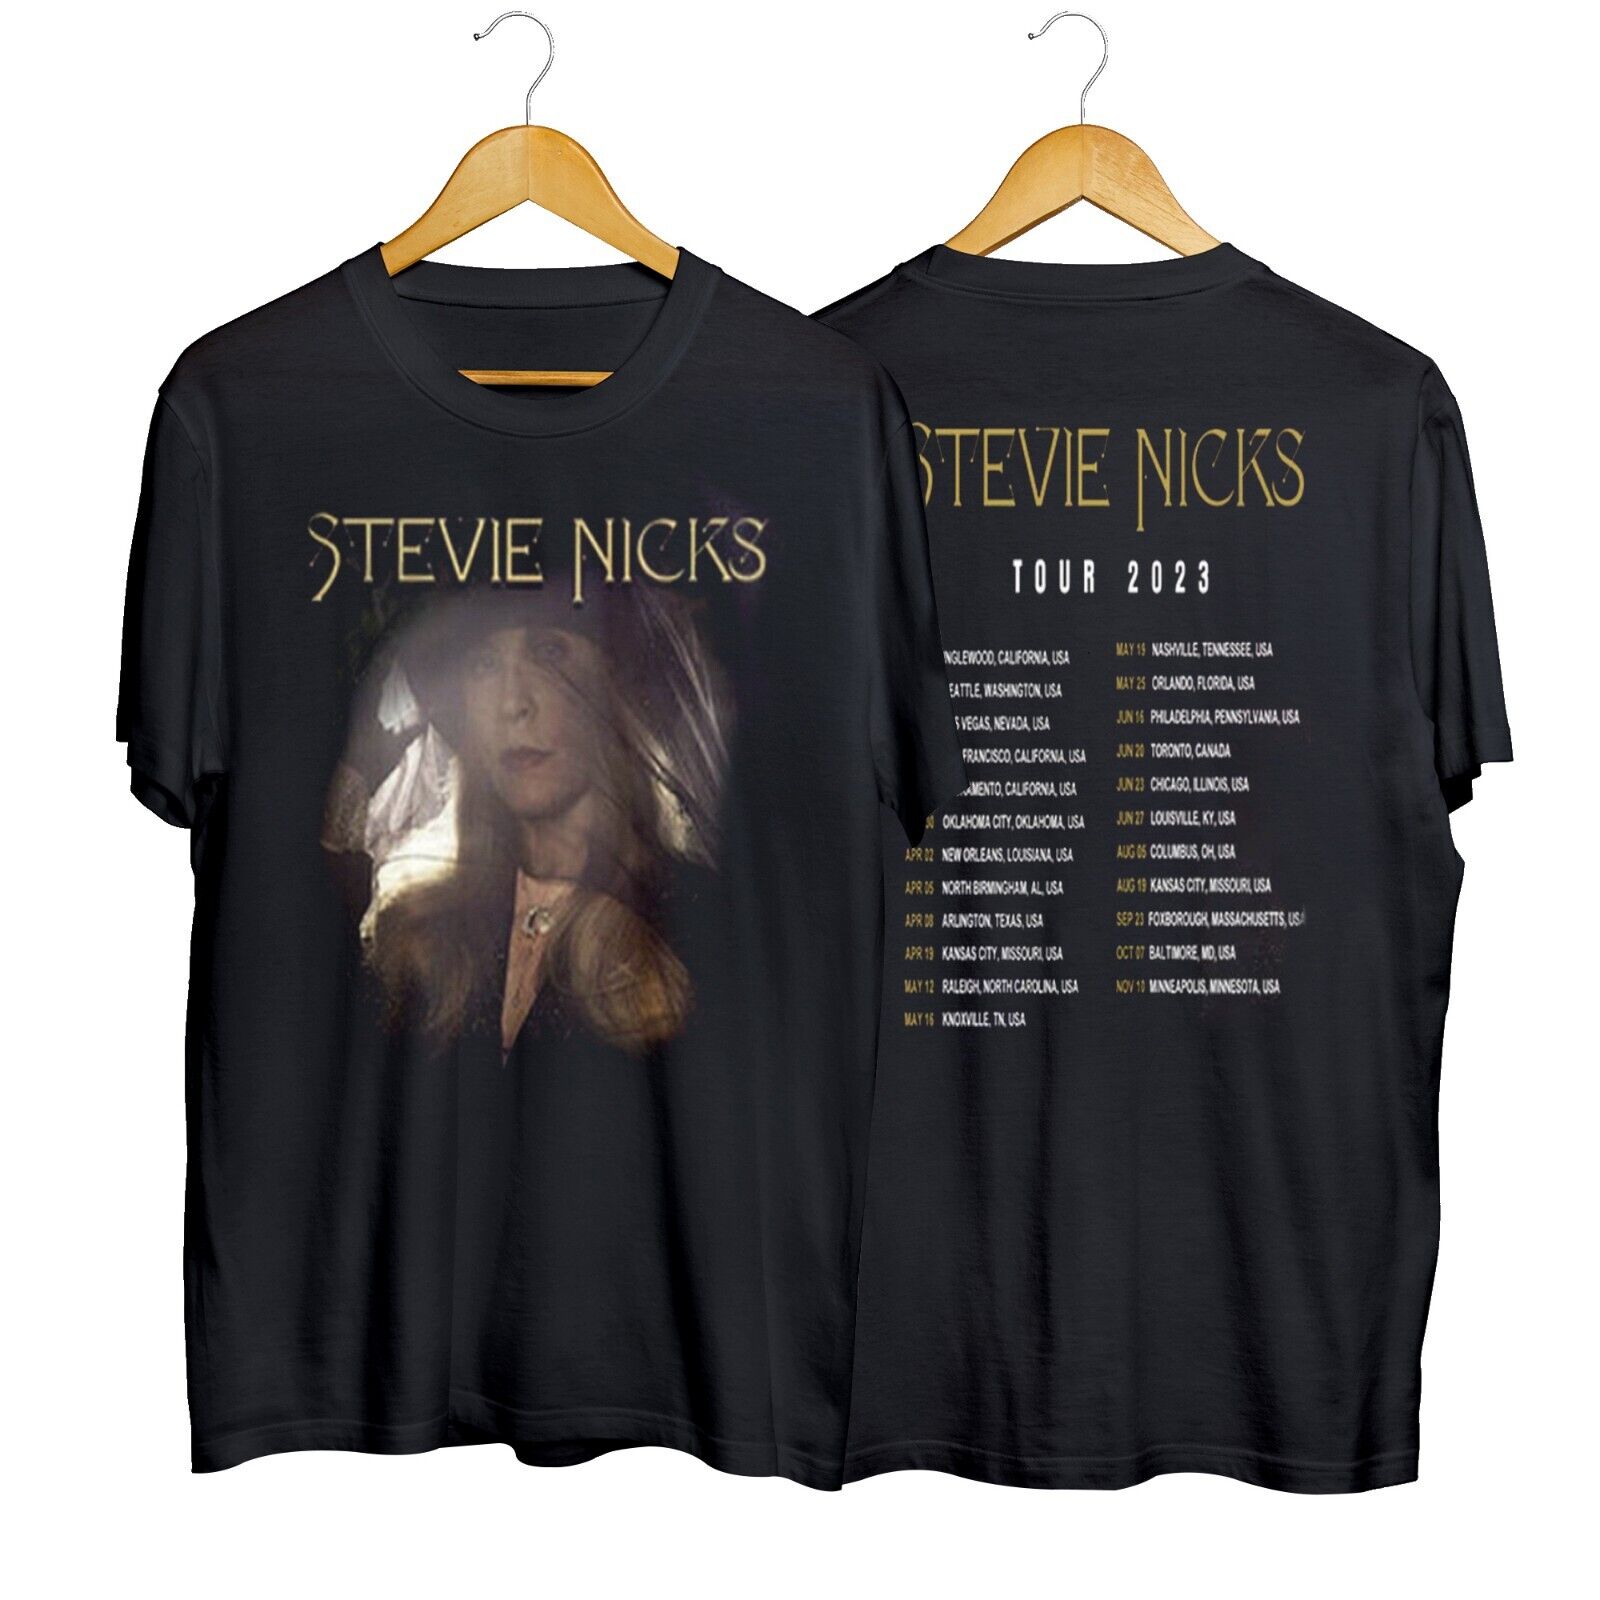 Stevie Nicks Tour 2023 Fleetwood Mac Band Tour Unisex T-shirt Shor Sleeve S-5XL